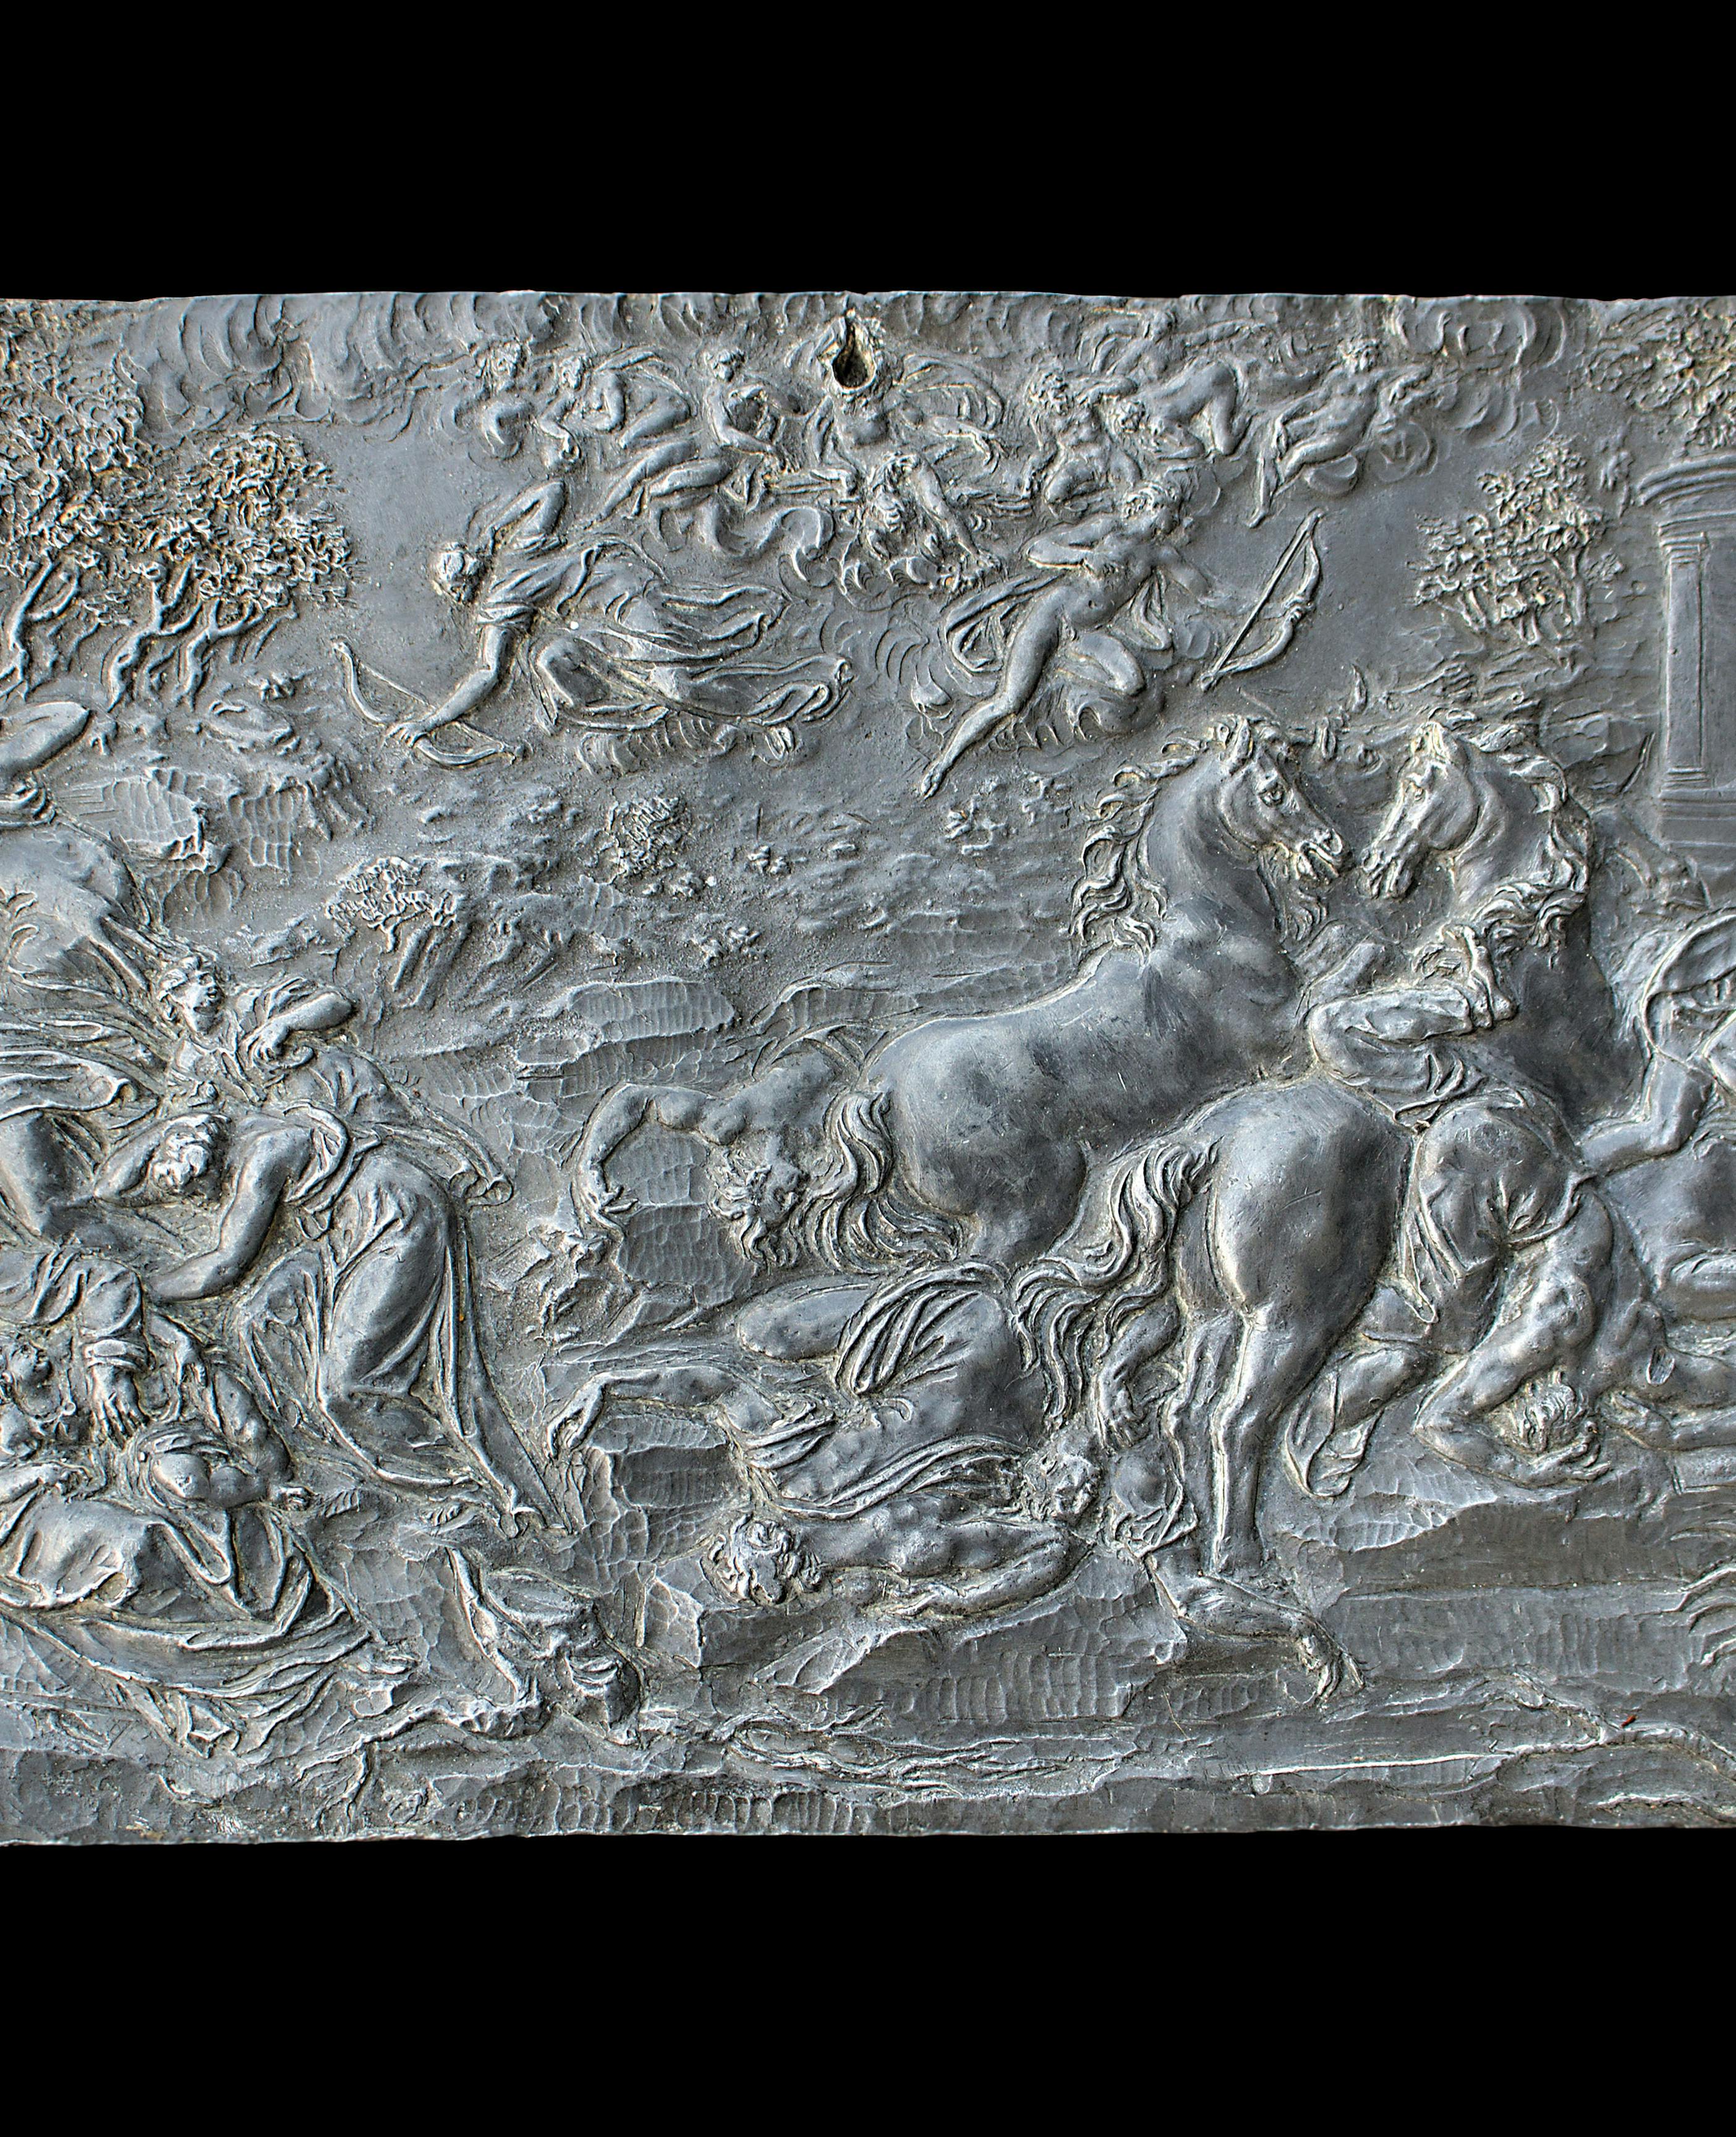 Scena di battaglia con figure umane, cavalli, alberi ed elementi architettonici